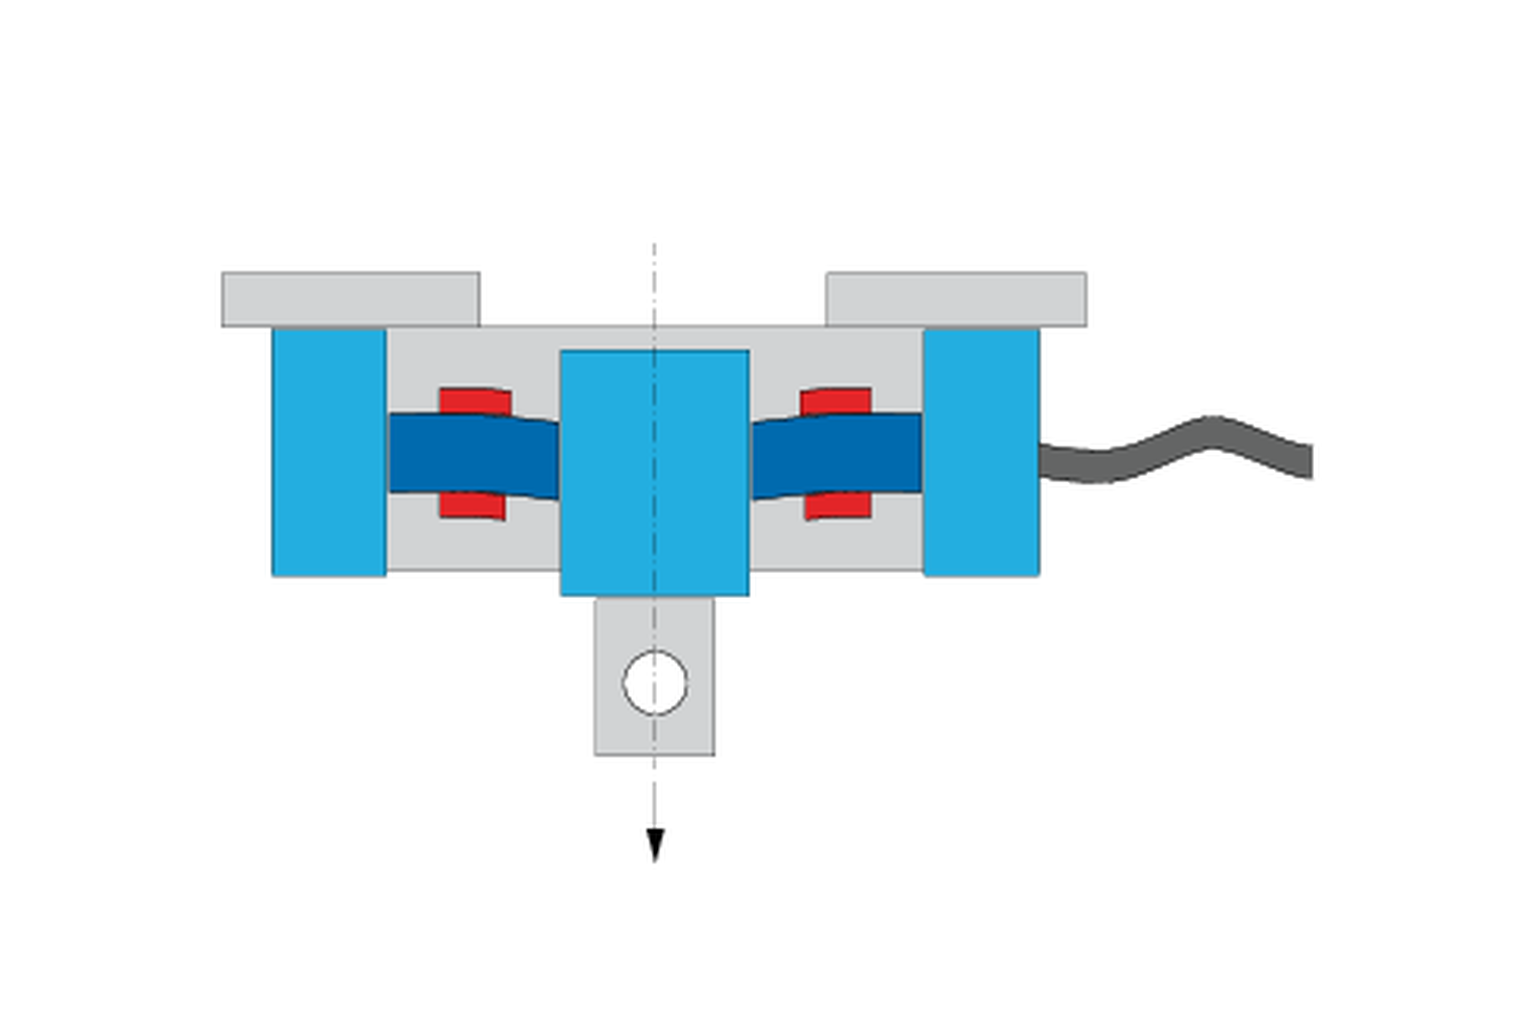 Como funciona uma célula de carga? Gráfico de célula de carga com strain gage sob alongamento e compressão